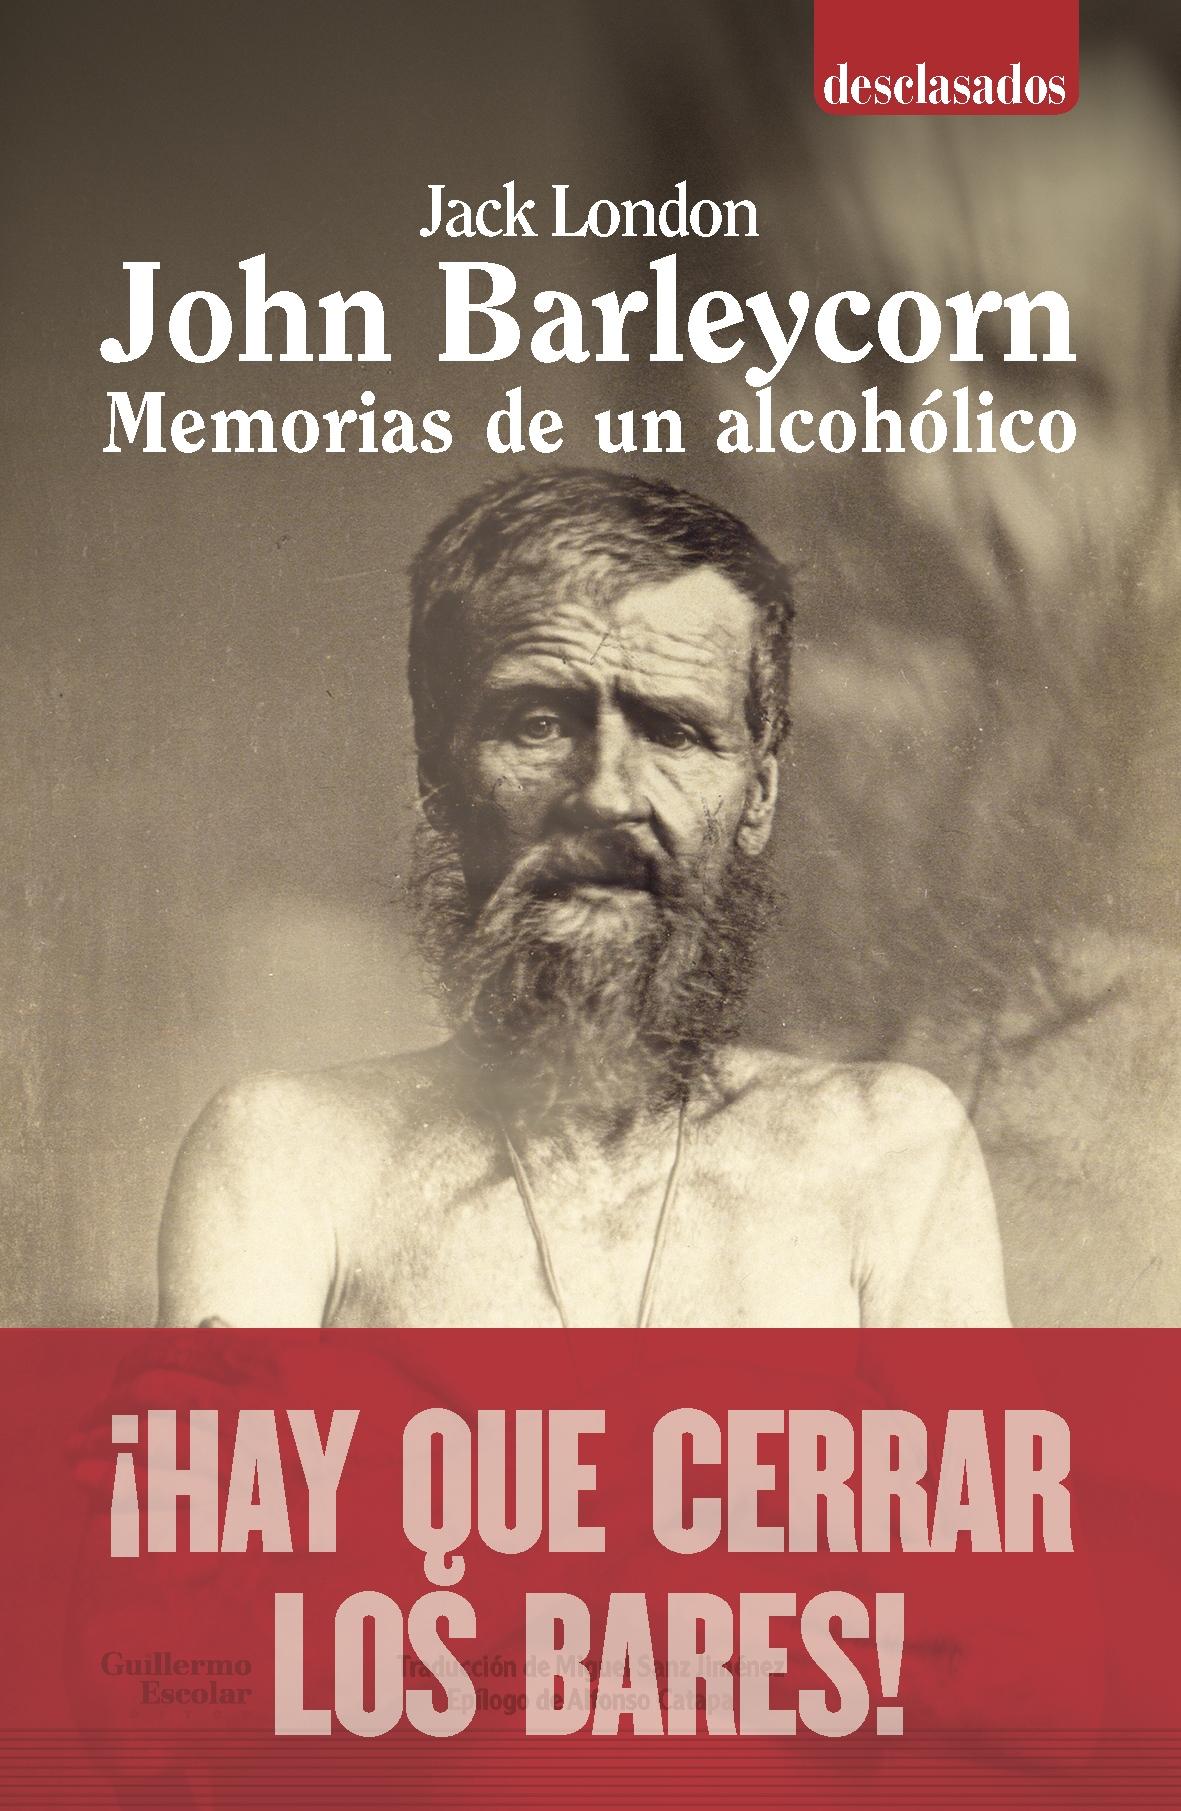 John Barleycorn "Memorias de un Alcohólico"